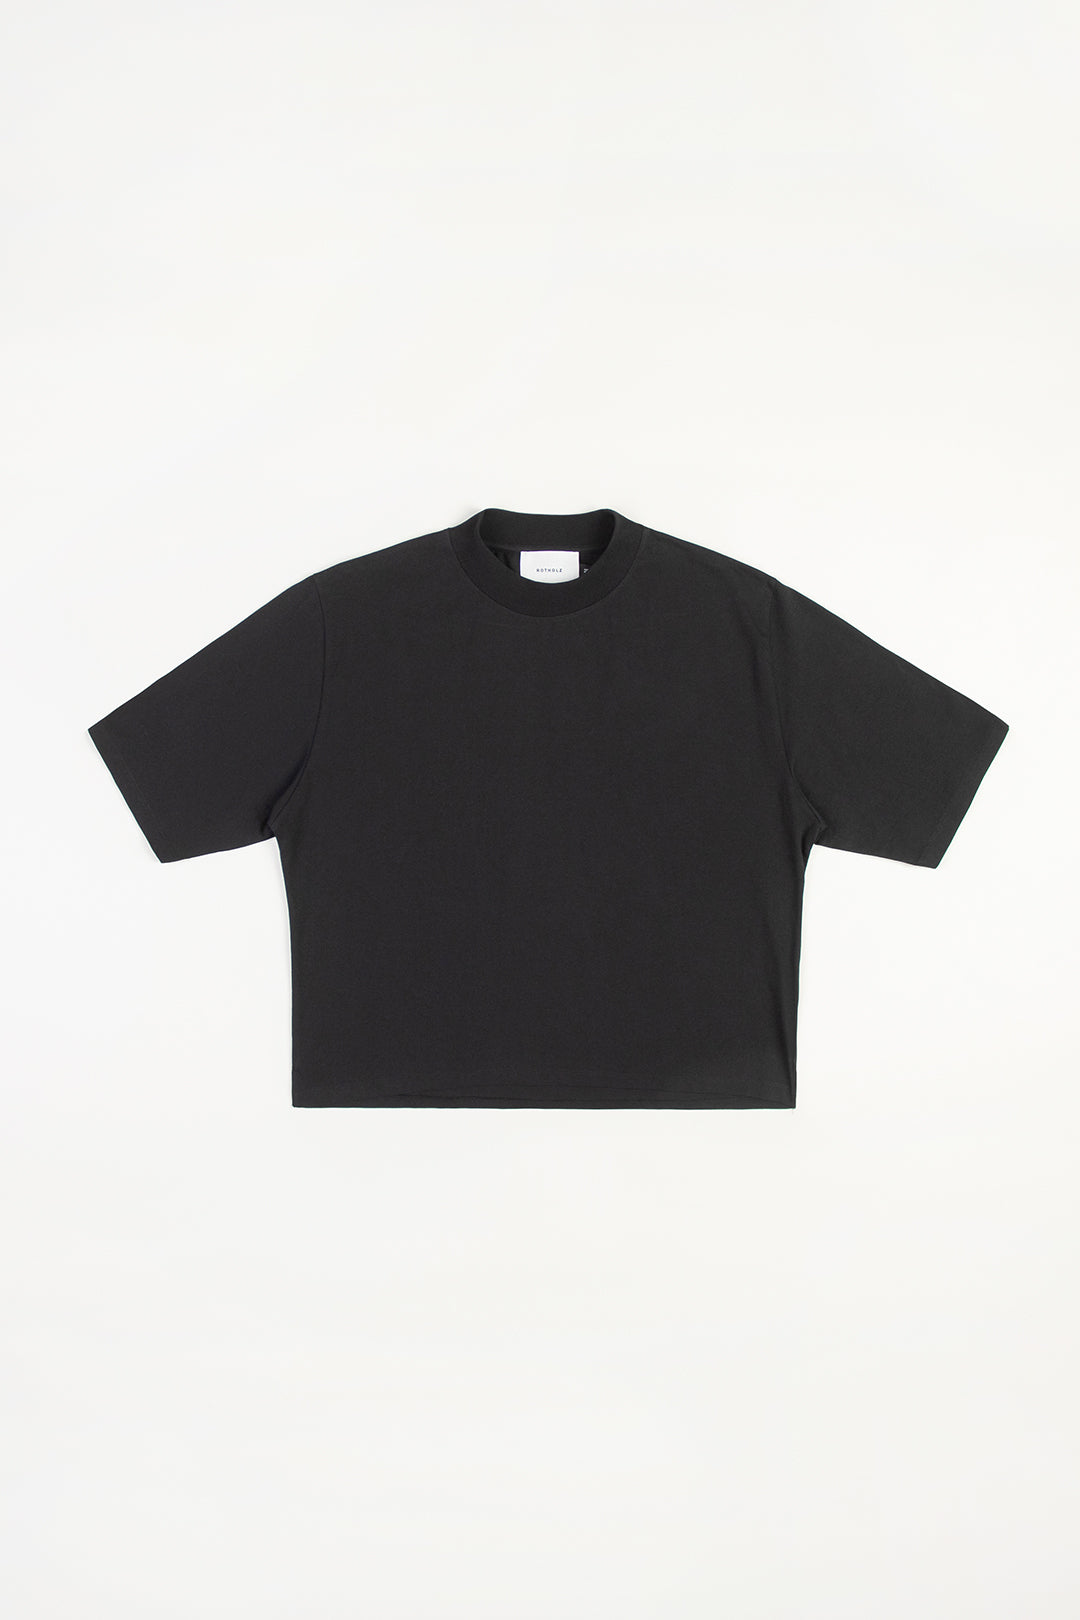 Schwarzes T-Shirt aus 100%Bio-Baumwolle von Rotholz